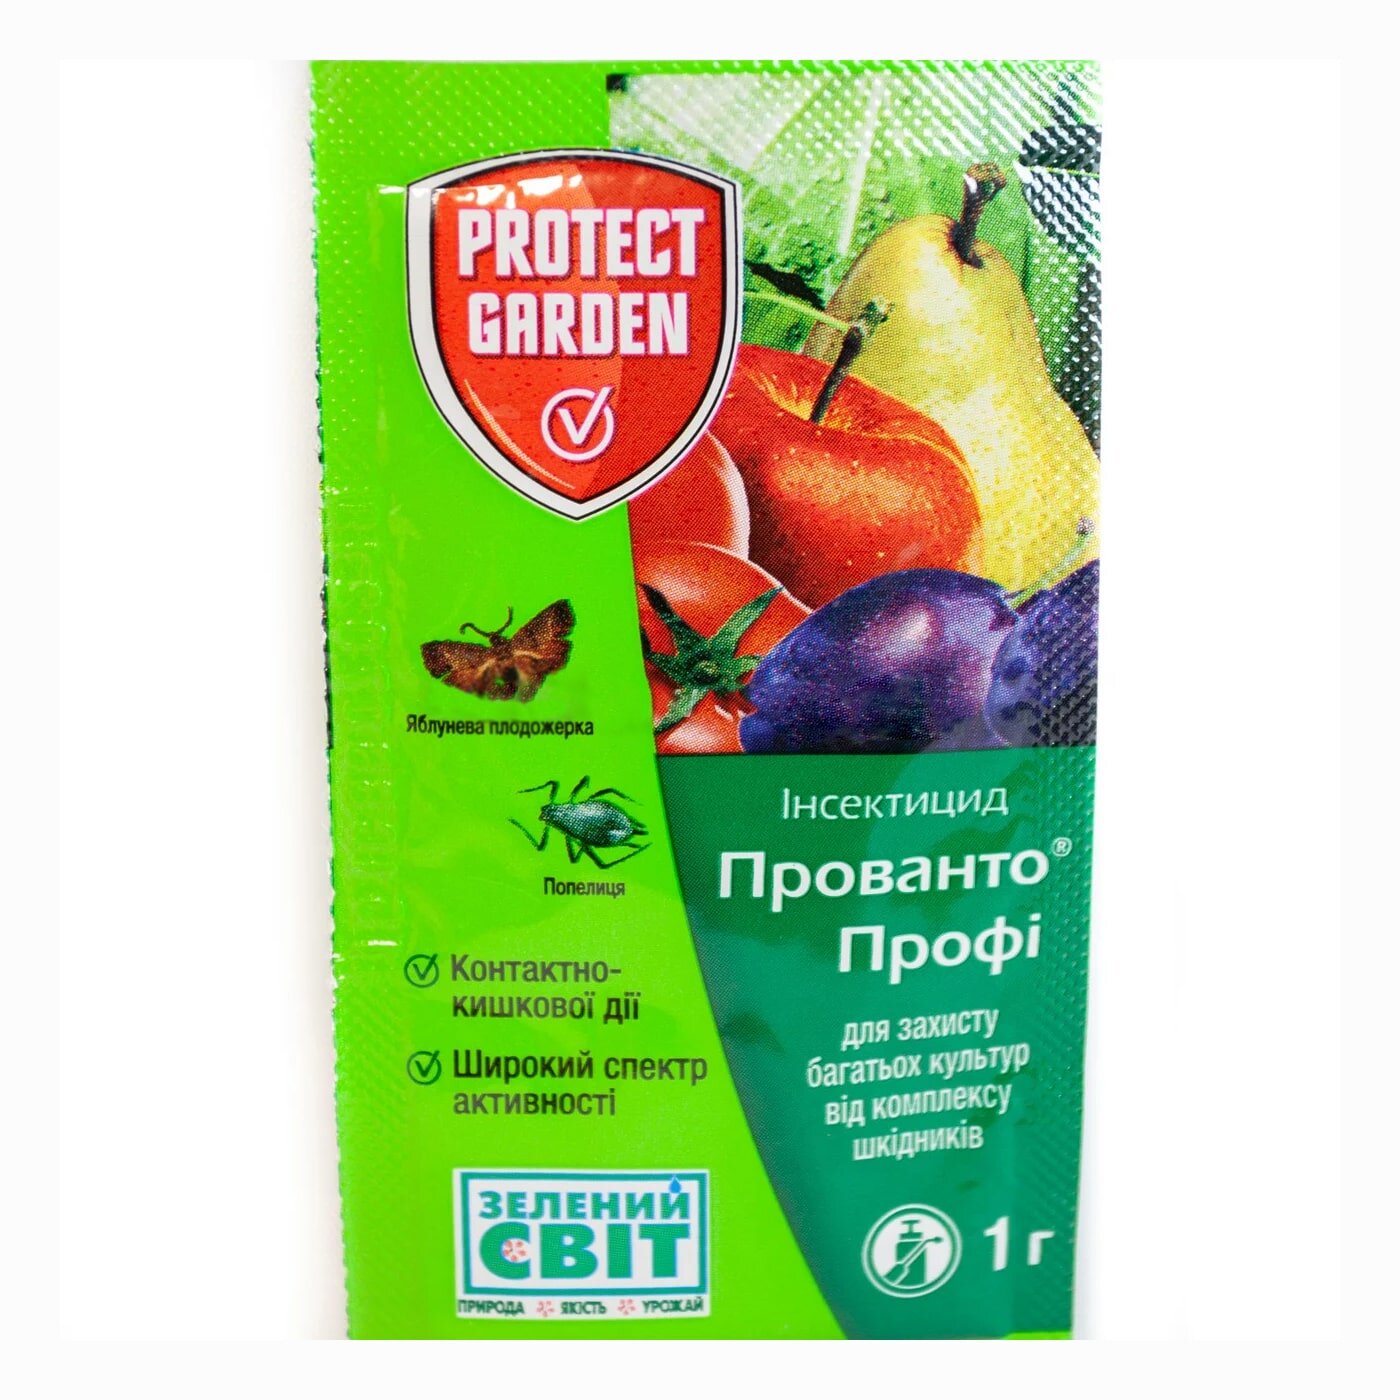 Инсектицид "Прованто Профи" (Децис) ТМ "Protect Garden" 1г